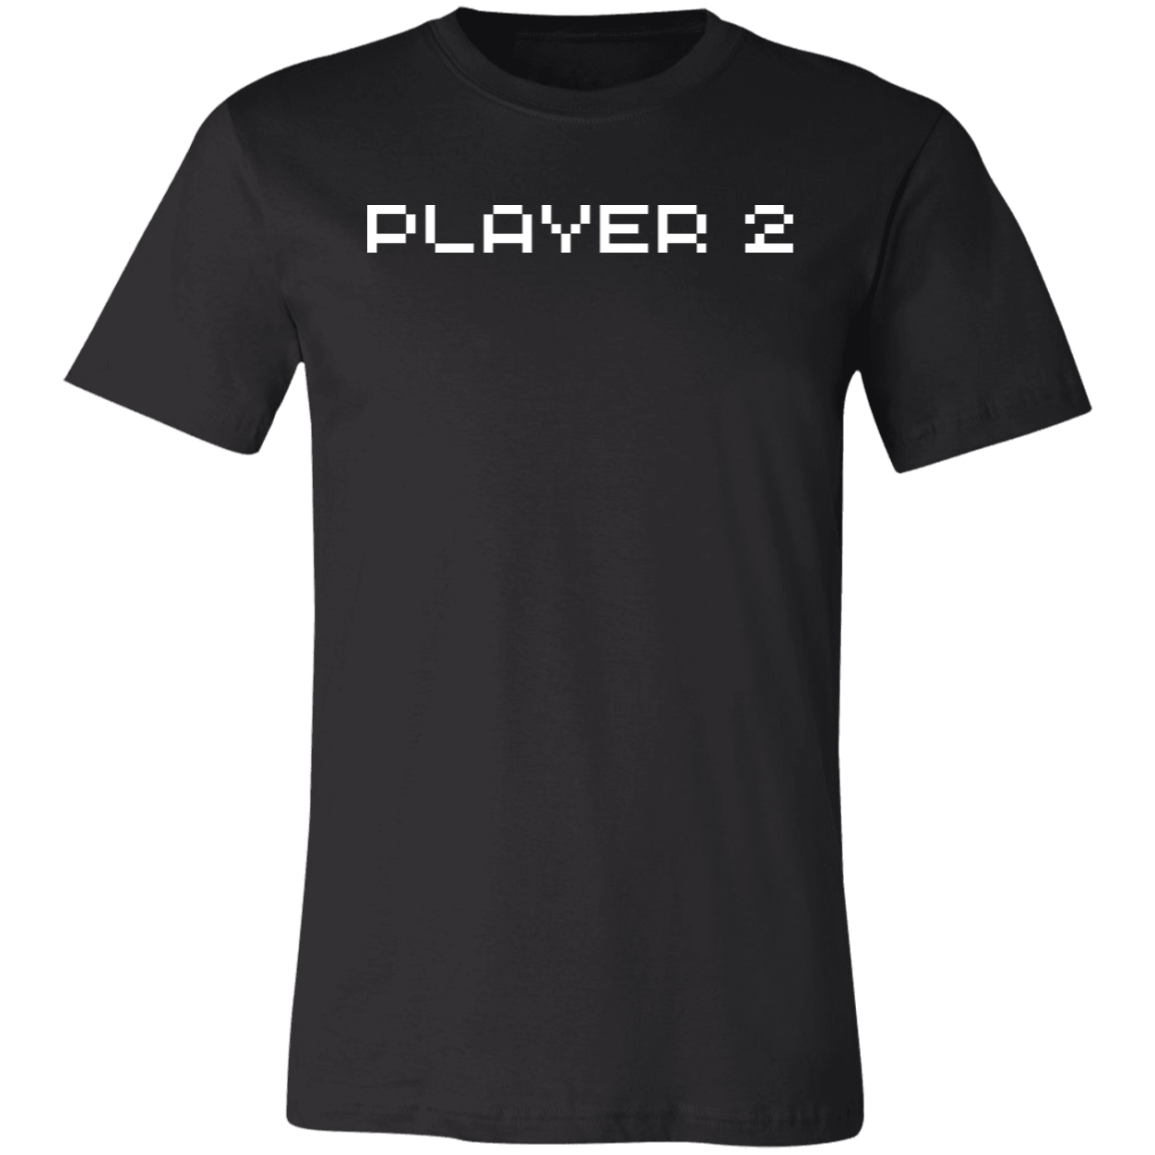 Player 2 Short-Sleeve T-Shirt